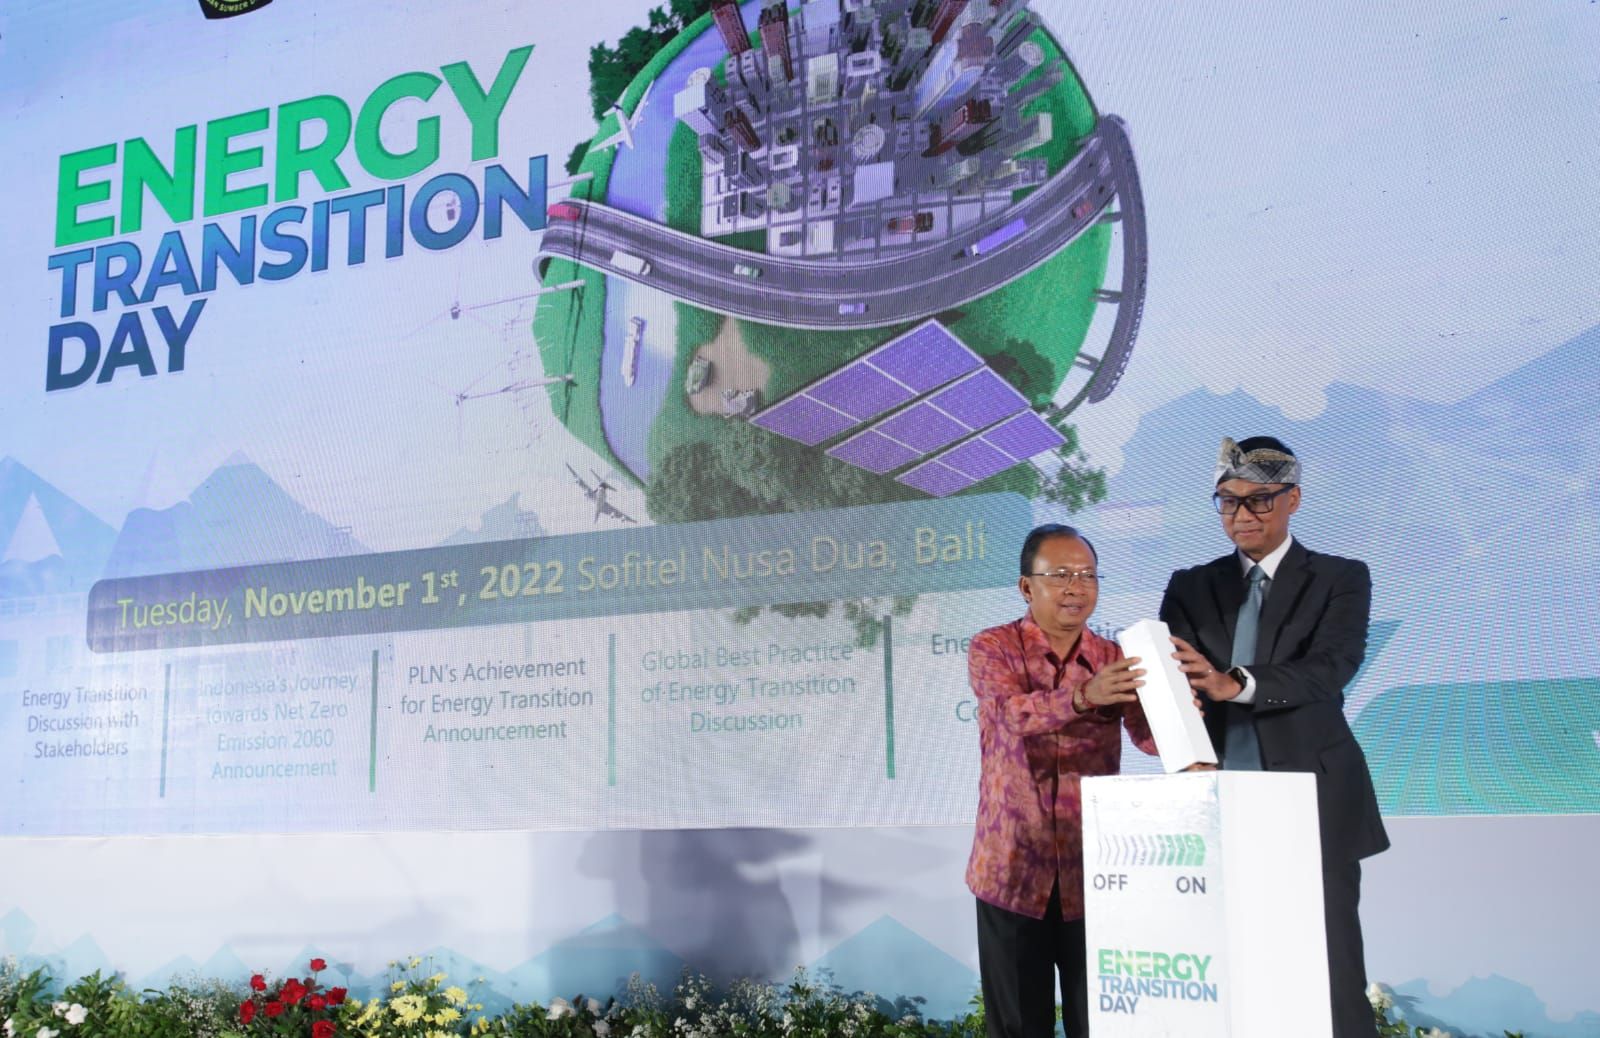 Gubernur Bali I Wayan Koster dalam acara Energy Transition Day, Selasa (1/11) di Bali, mengapresiasi langkah PLN dalam melakukan transisi ke energi yang lebih bersih. dok. PLN